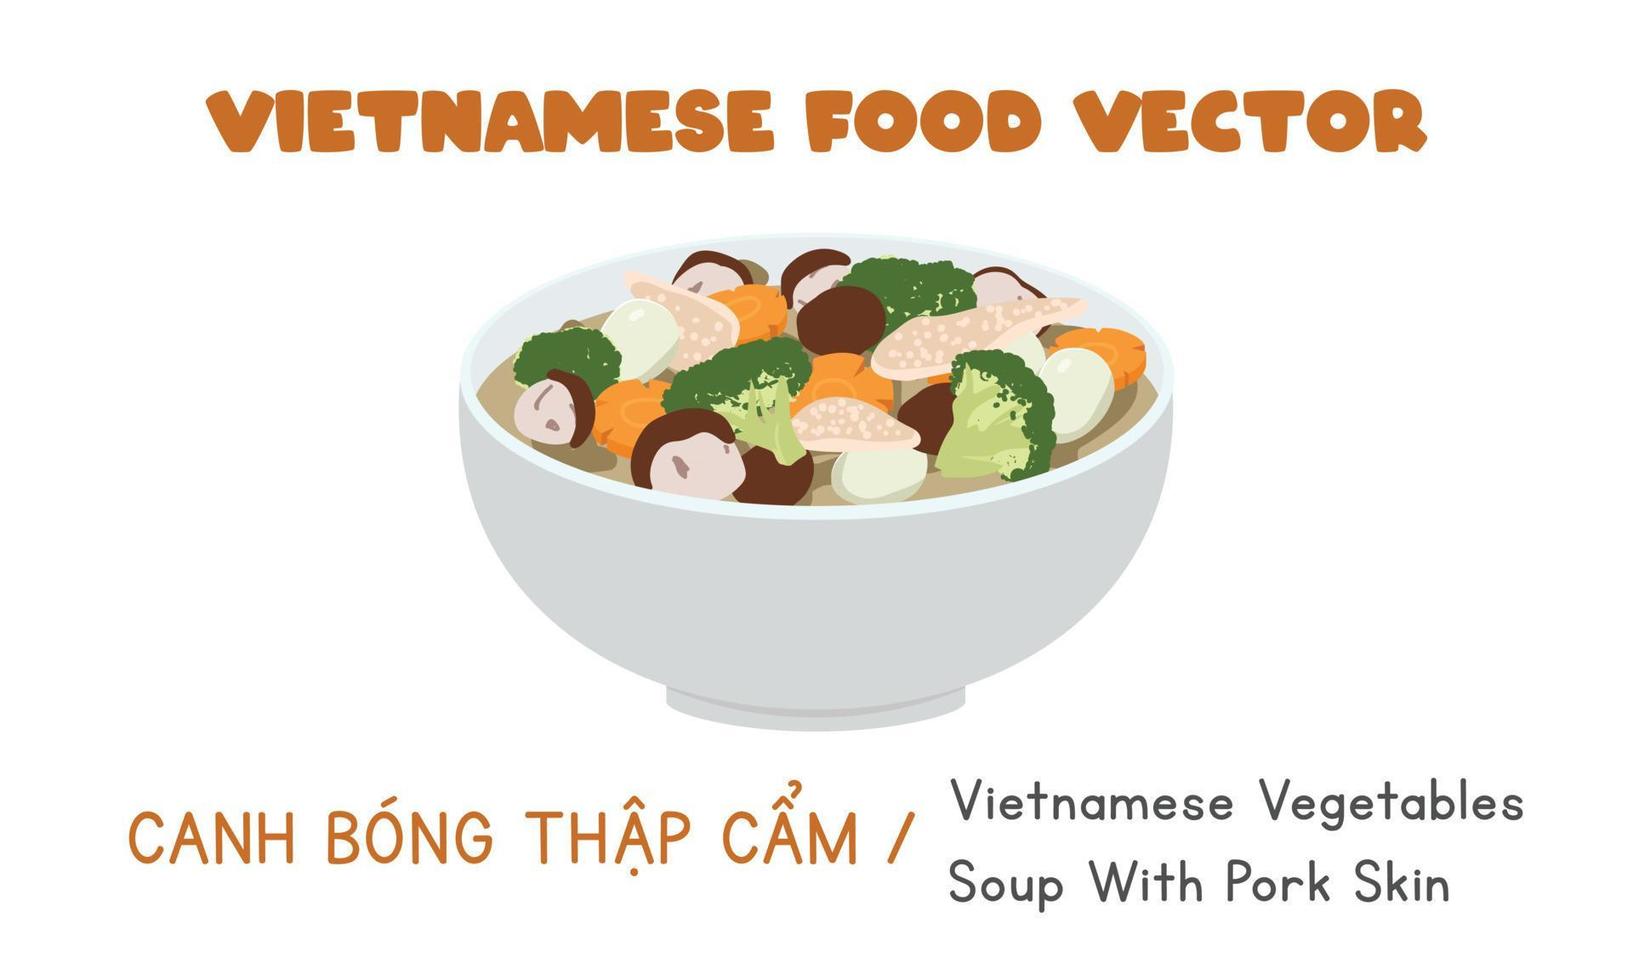 vietnamita verdure la minestra con secco Maiale pelle, broccoli, carota piatto vettore disegno, clipart cartone animato stile. asiatico cibo. vietnamita cucina. Vietnam lunare nuovo anno tradizionale cibo llustration